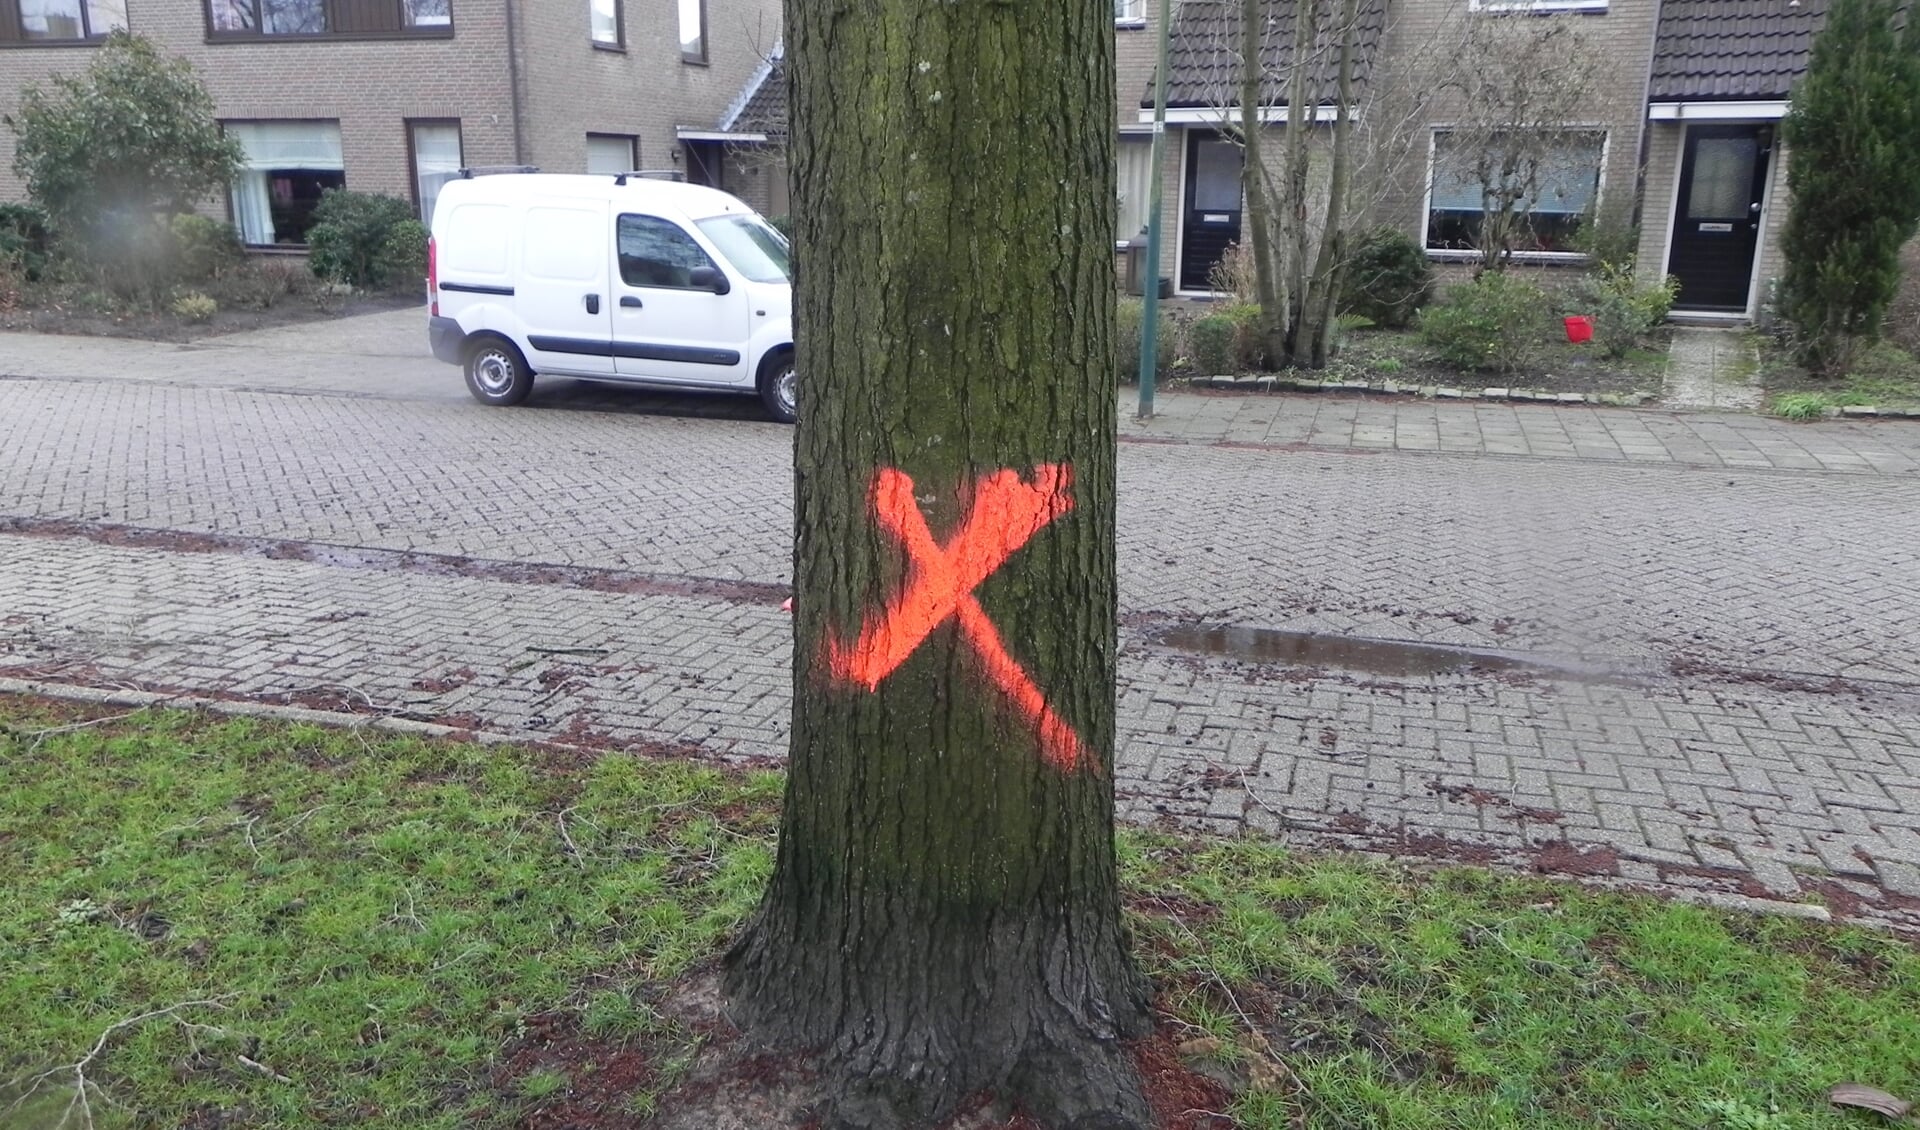 Met een rode X is aangegeven dat de Es moet worden omgezaagd.